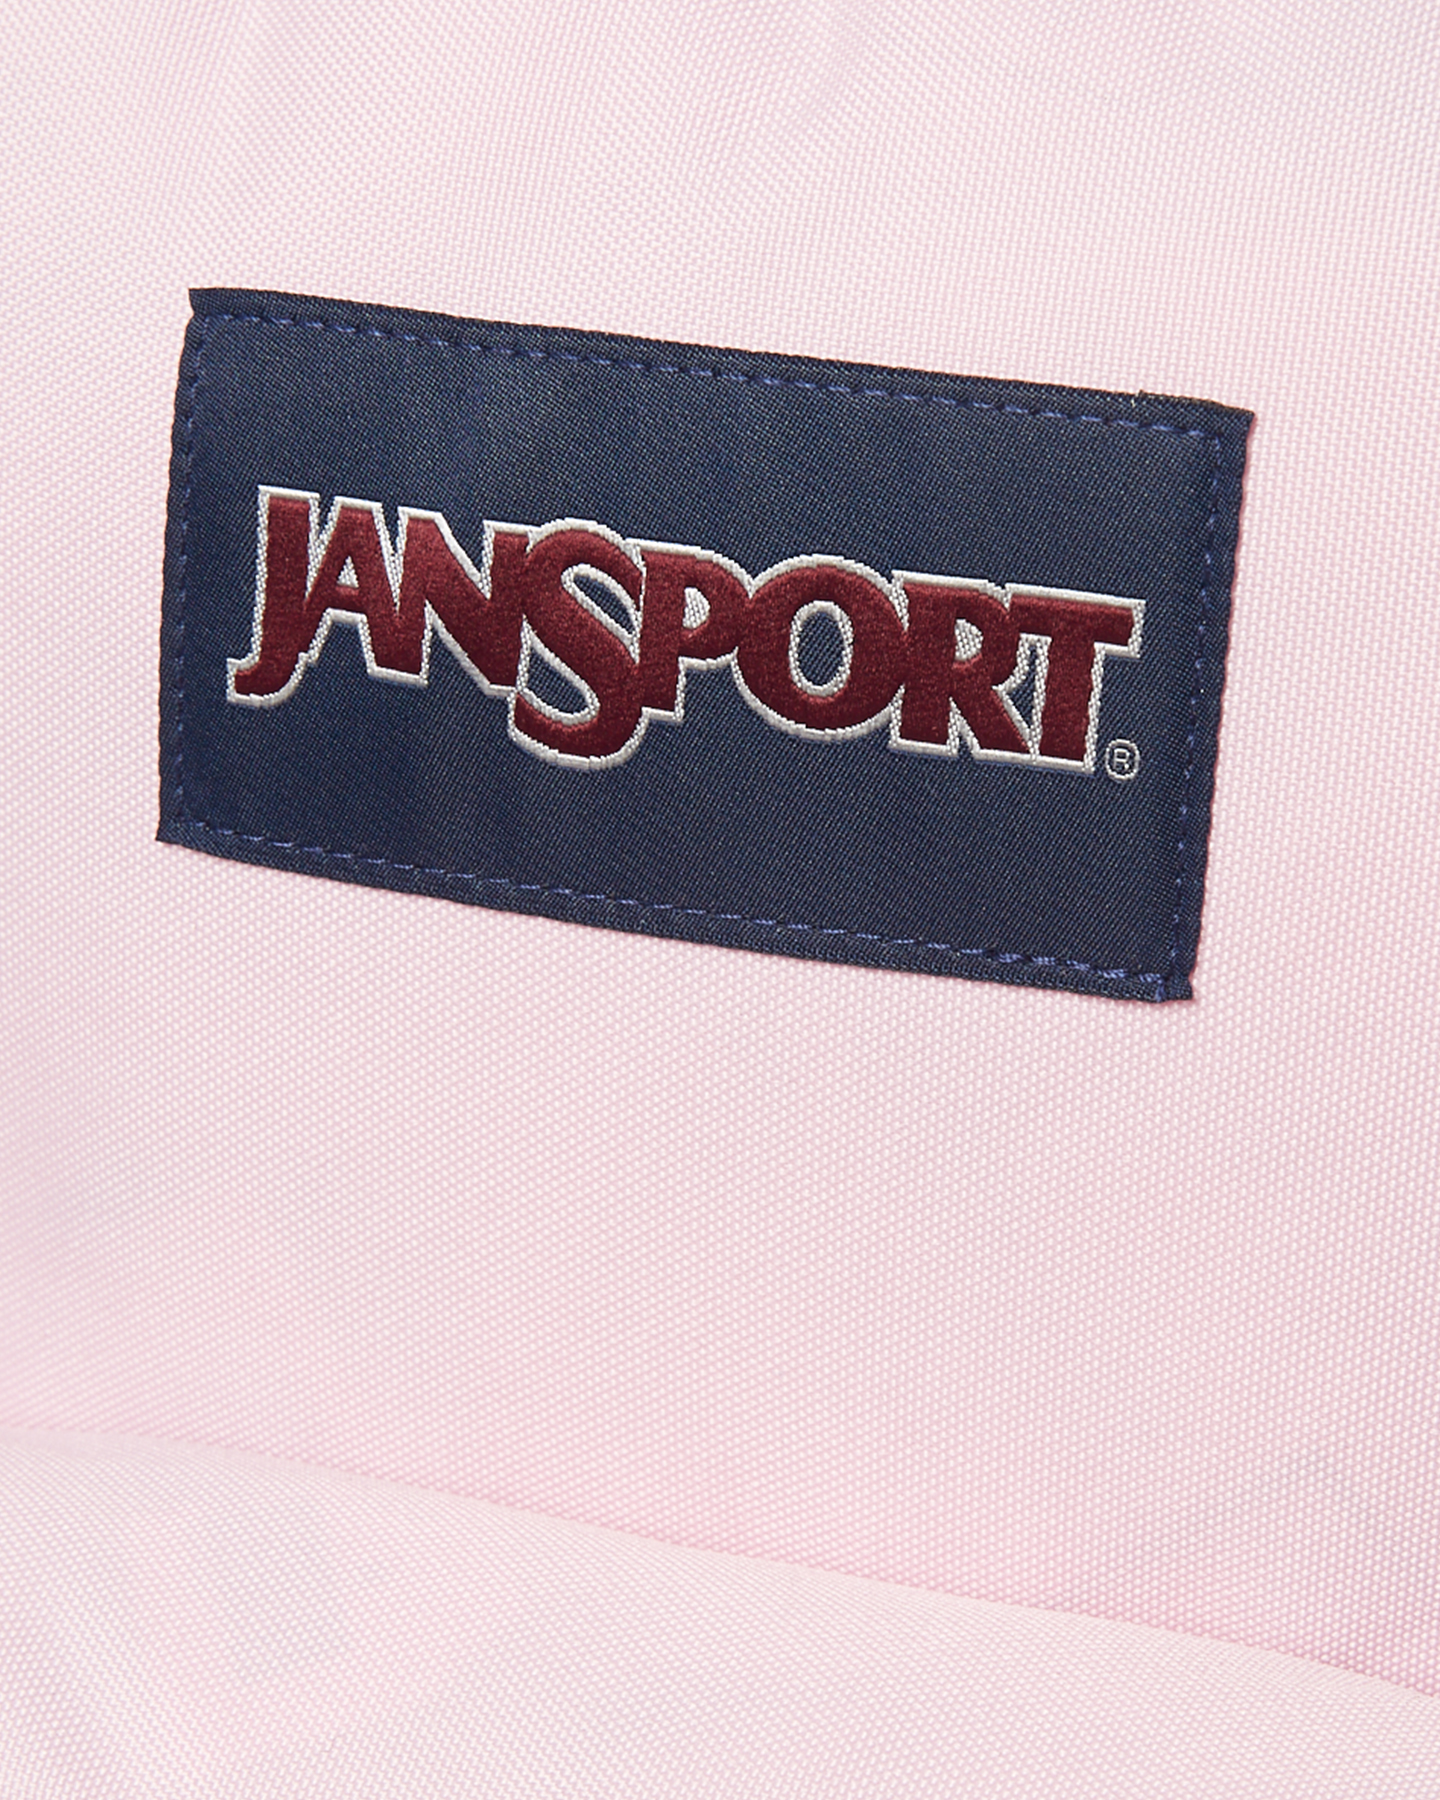 Jansport Superbreak Backpack - Pink Mist | SurfStitch